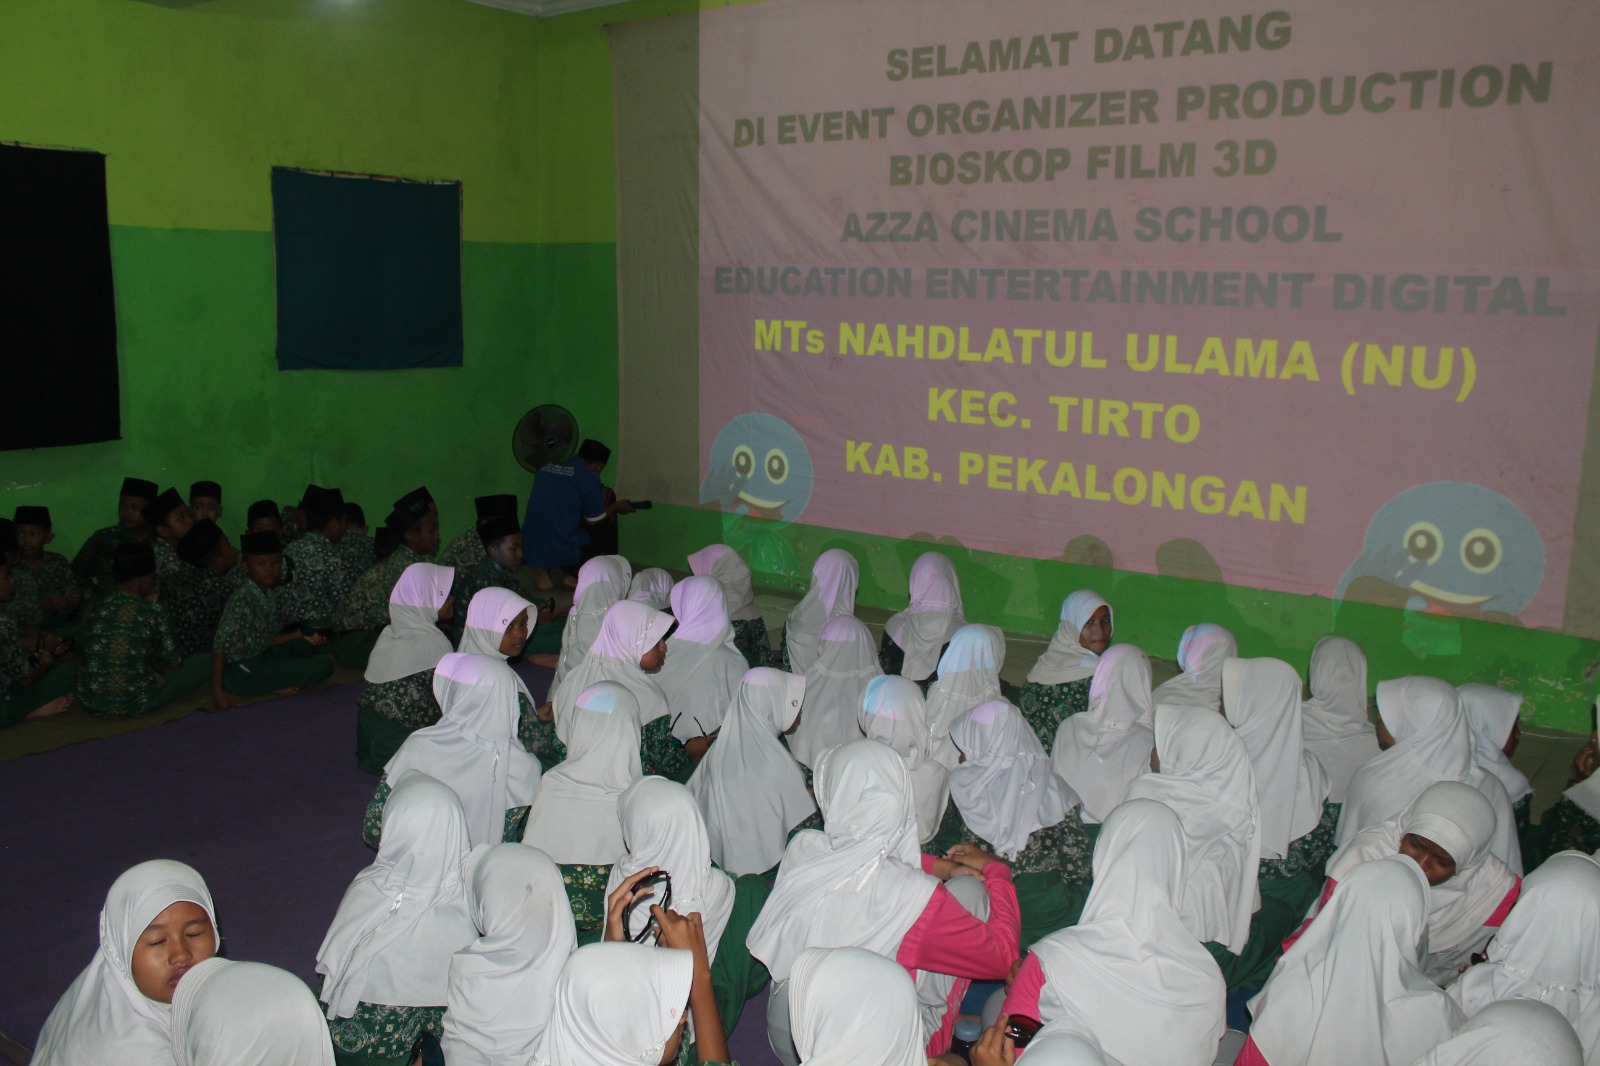 Implementasi Literasi Digital, Siswa Kelas VI di Lingkungan Kecamatan Tirto Nonton Bersama Film 3 Dimensi